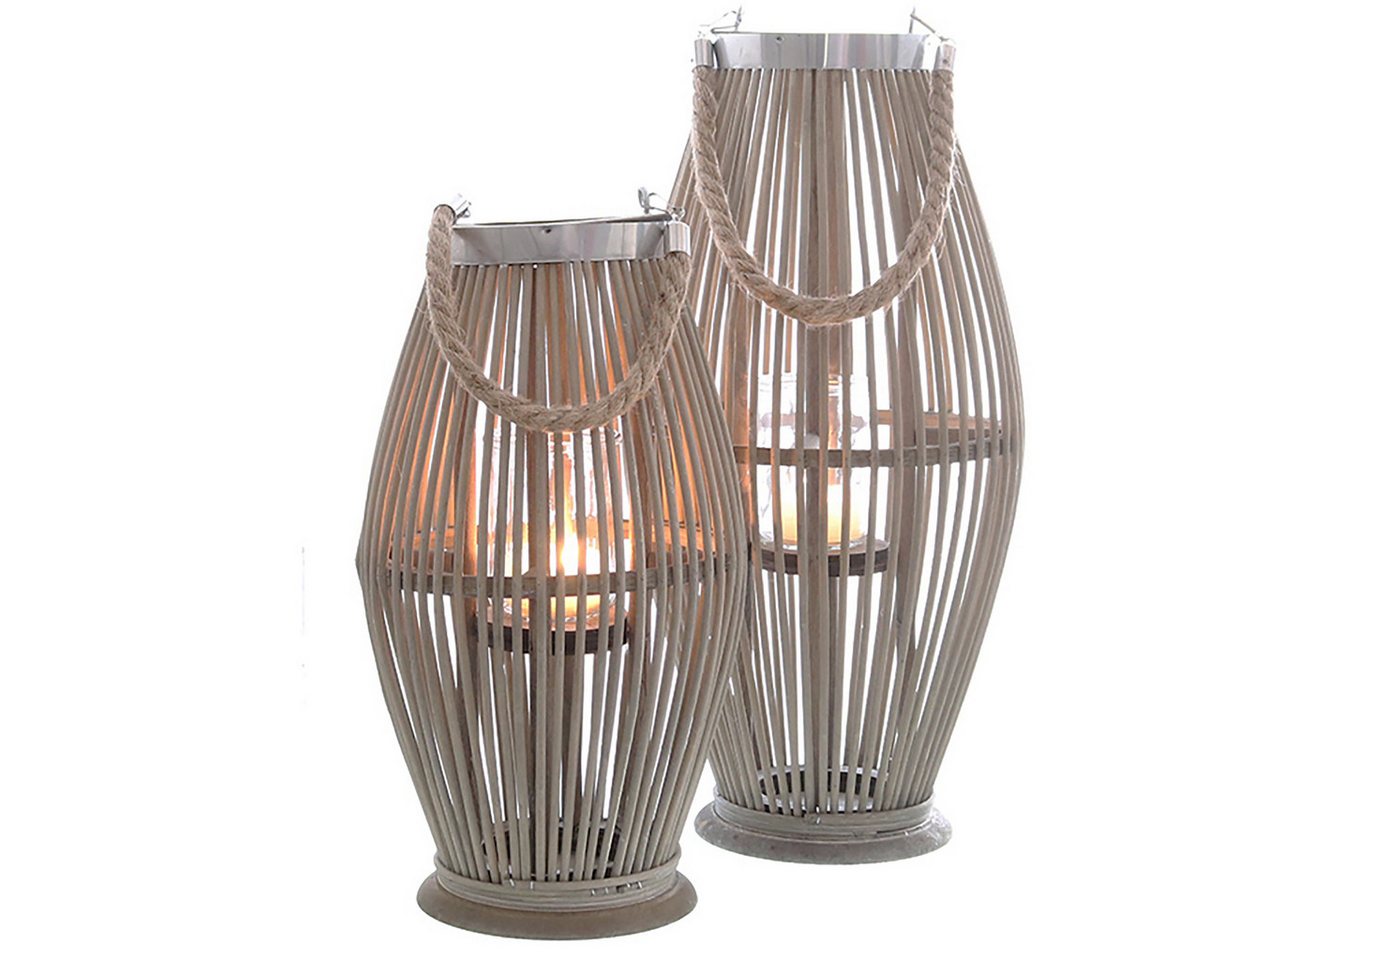 Annastore Laterne aus Bambus mit Henkel und Glaszylinder Bambuslaterne Gartenlaterne, Windlicht aus Bambus von Annastore